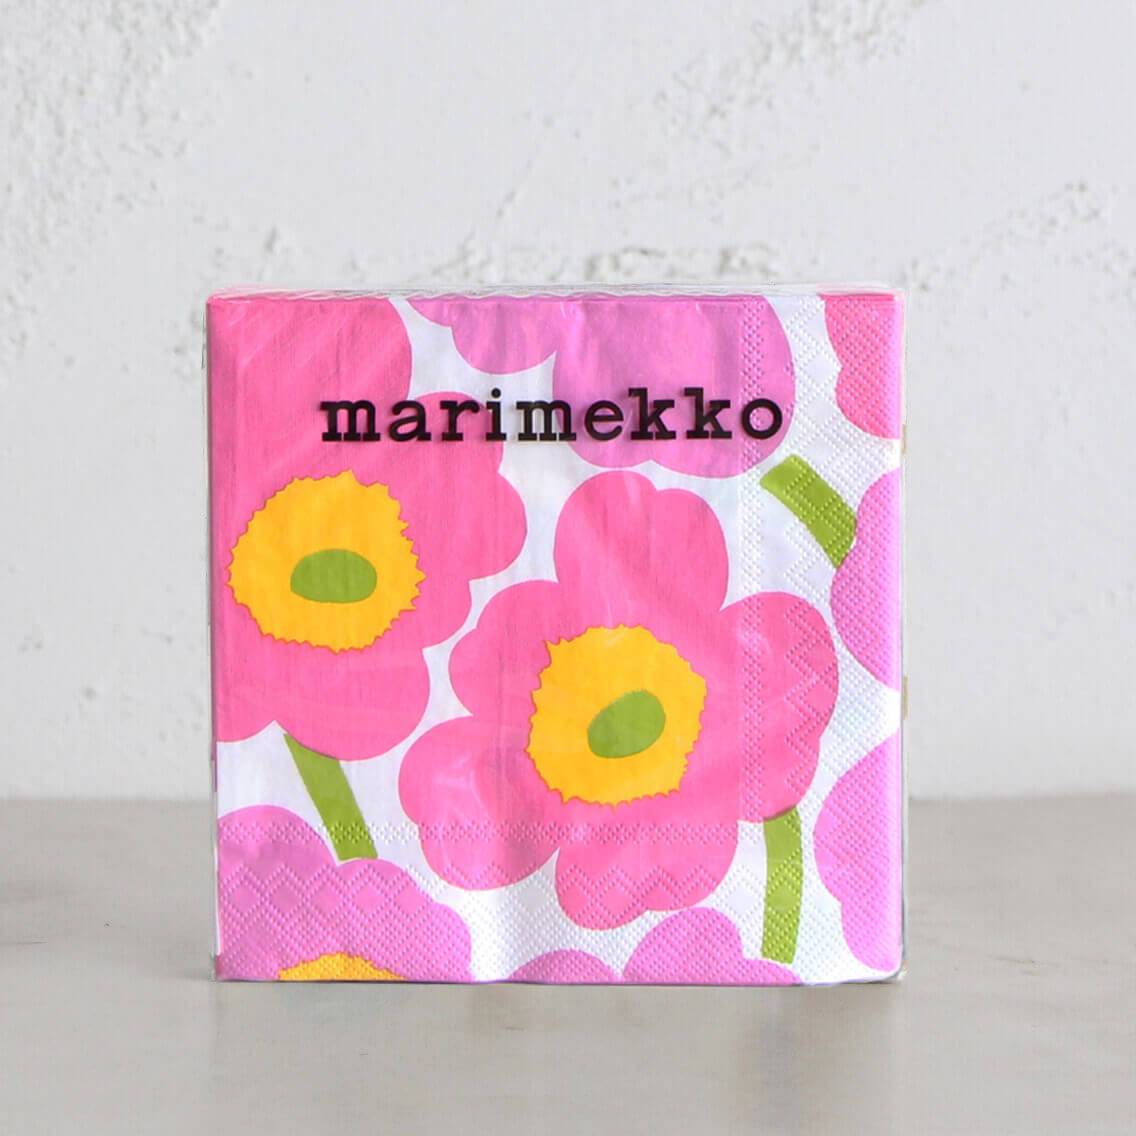 Marimekko - Napkins